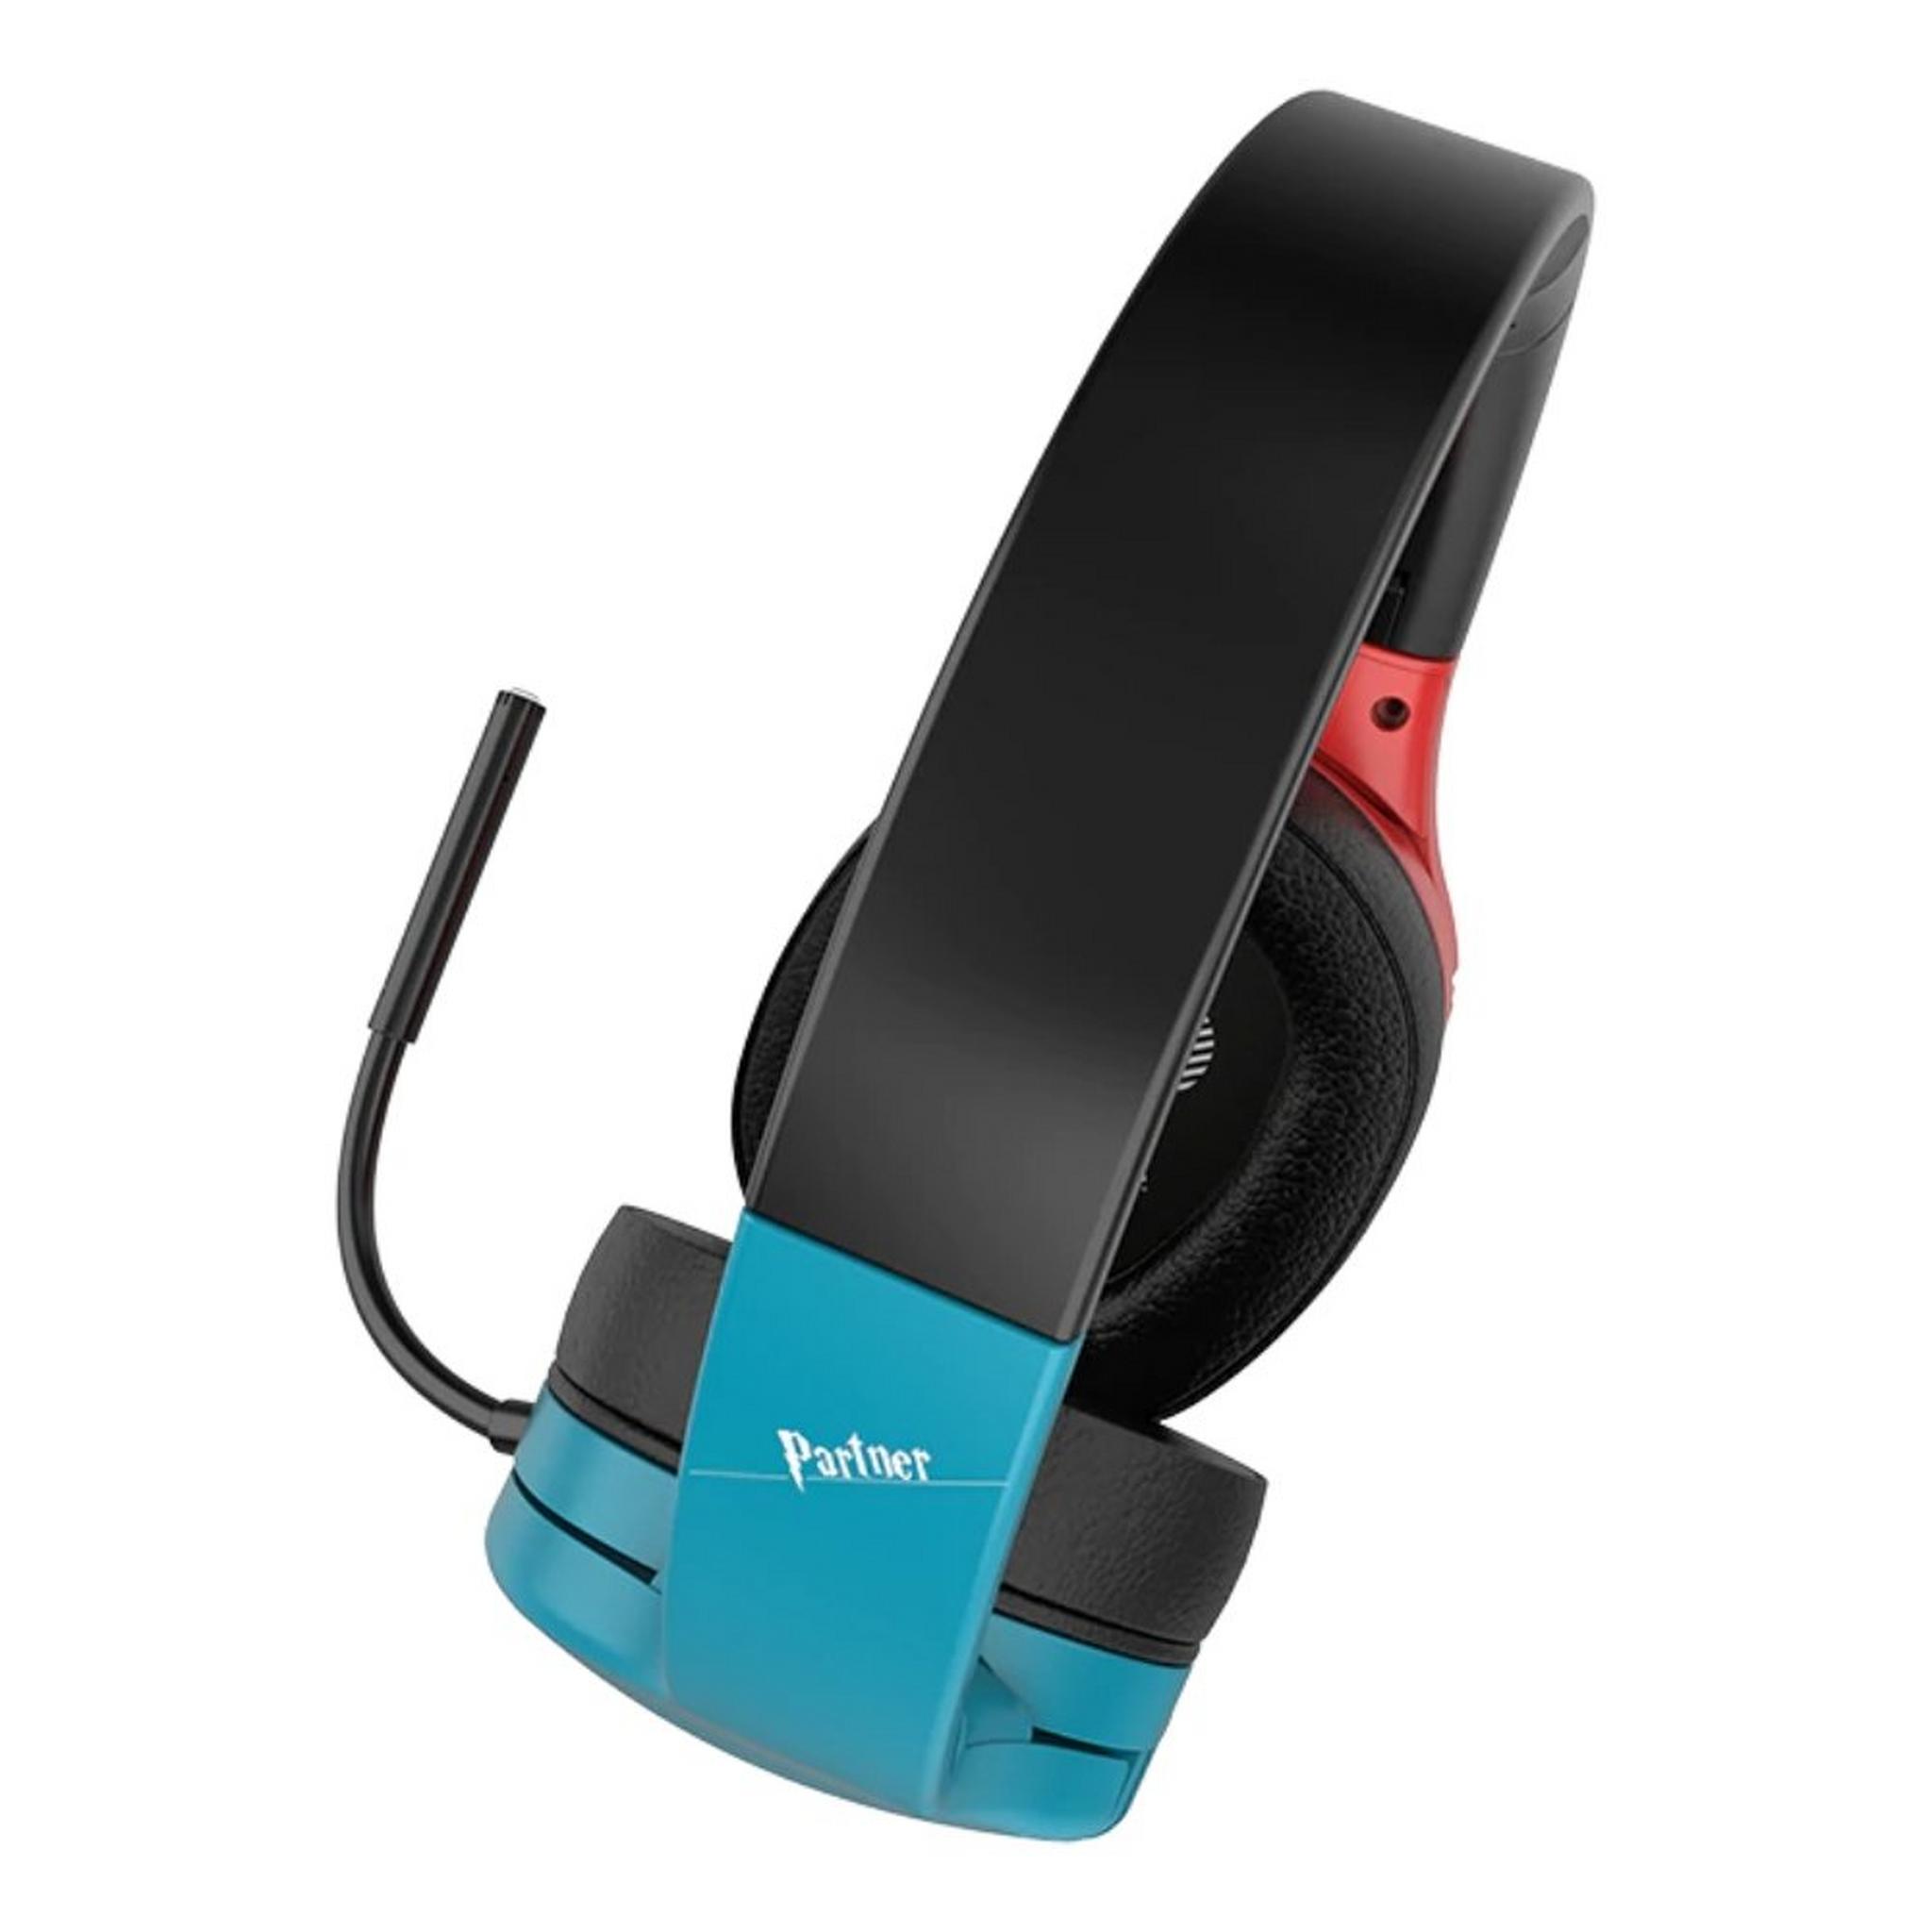 Sades Partner Wireless Gaming Headset